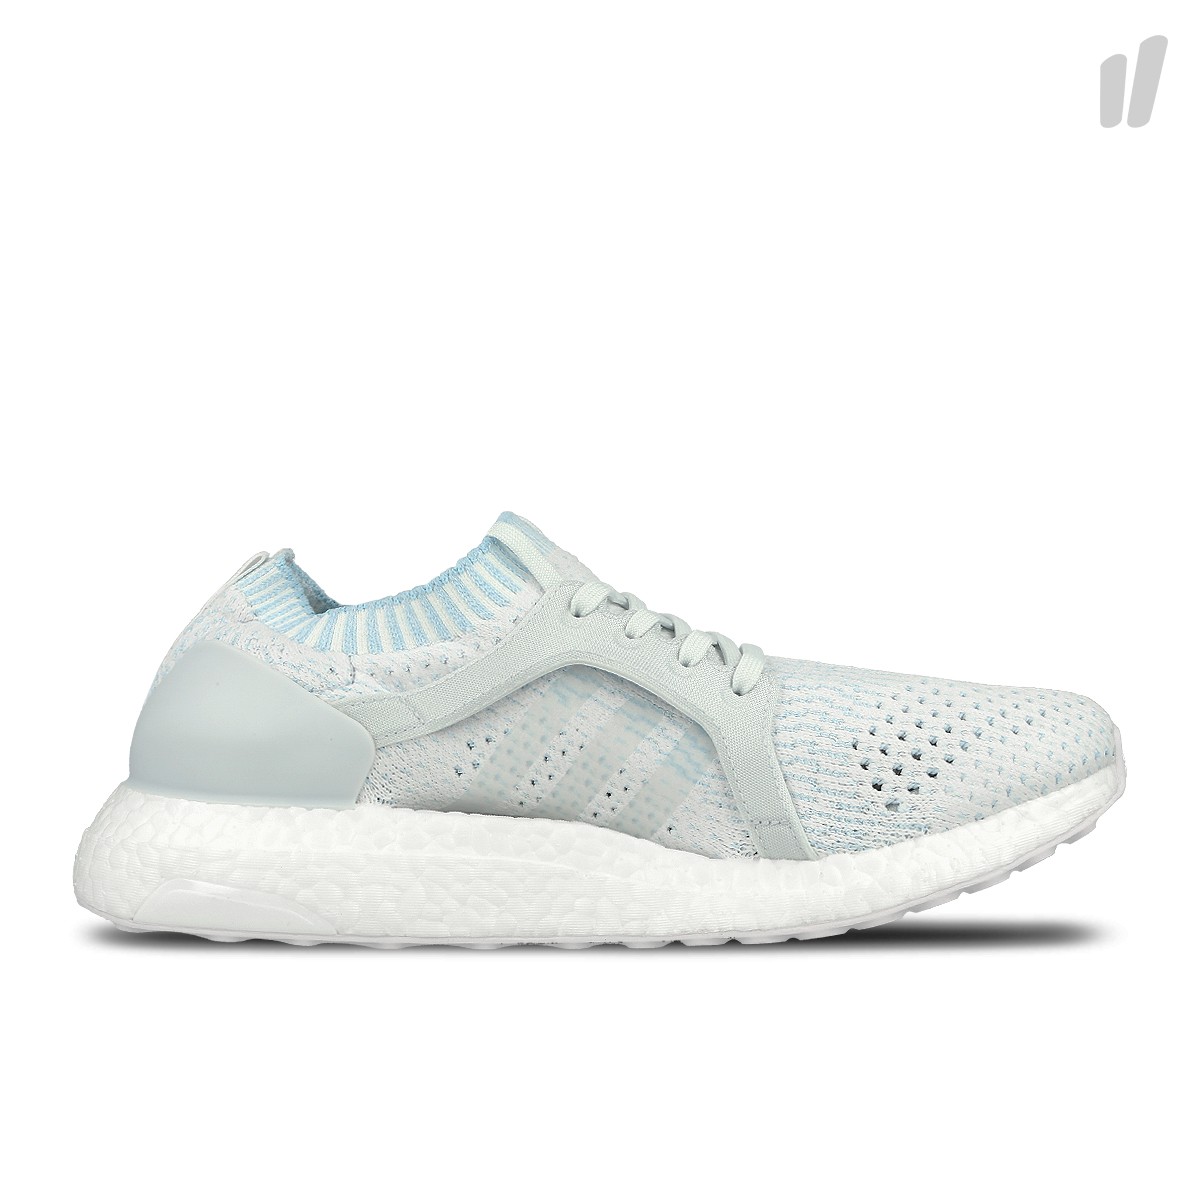 Adidas W UltraBOOST X Parley
Footwear White / Icey Blue